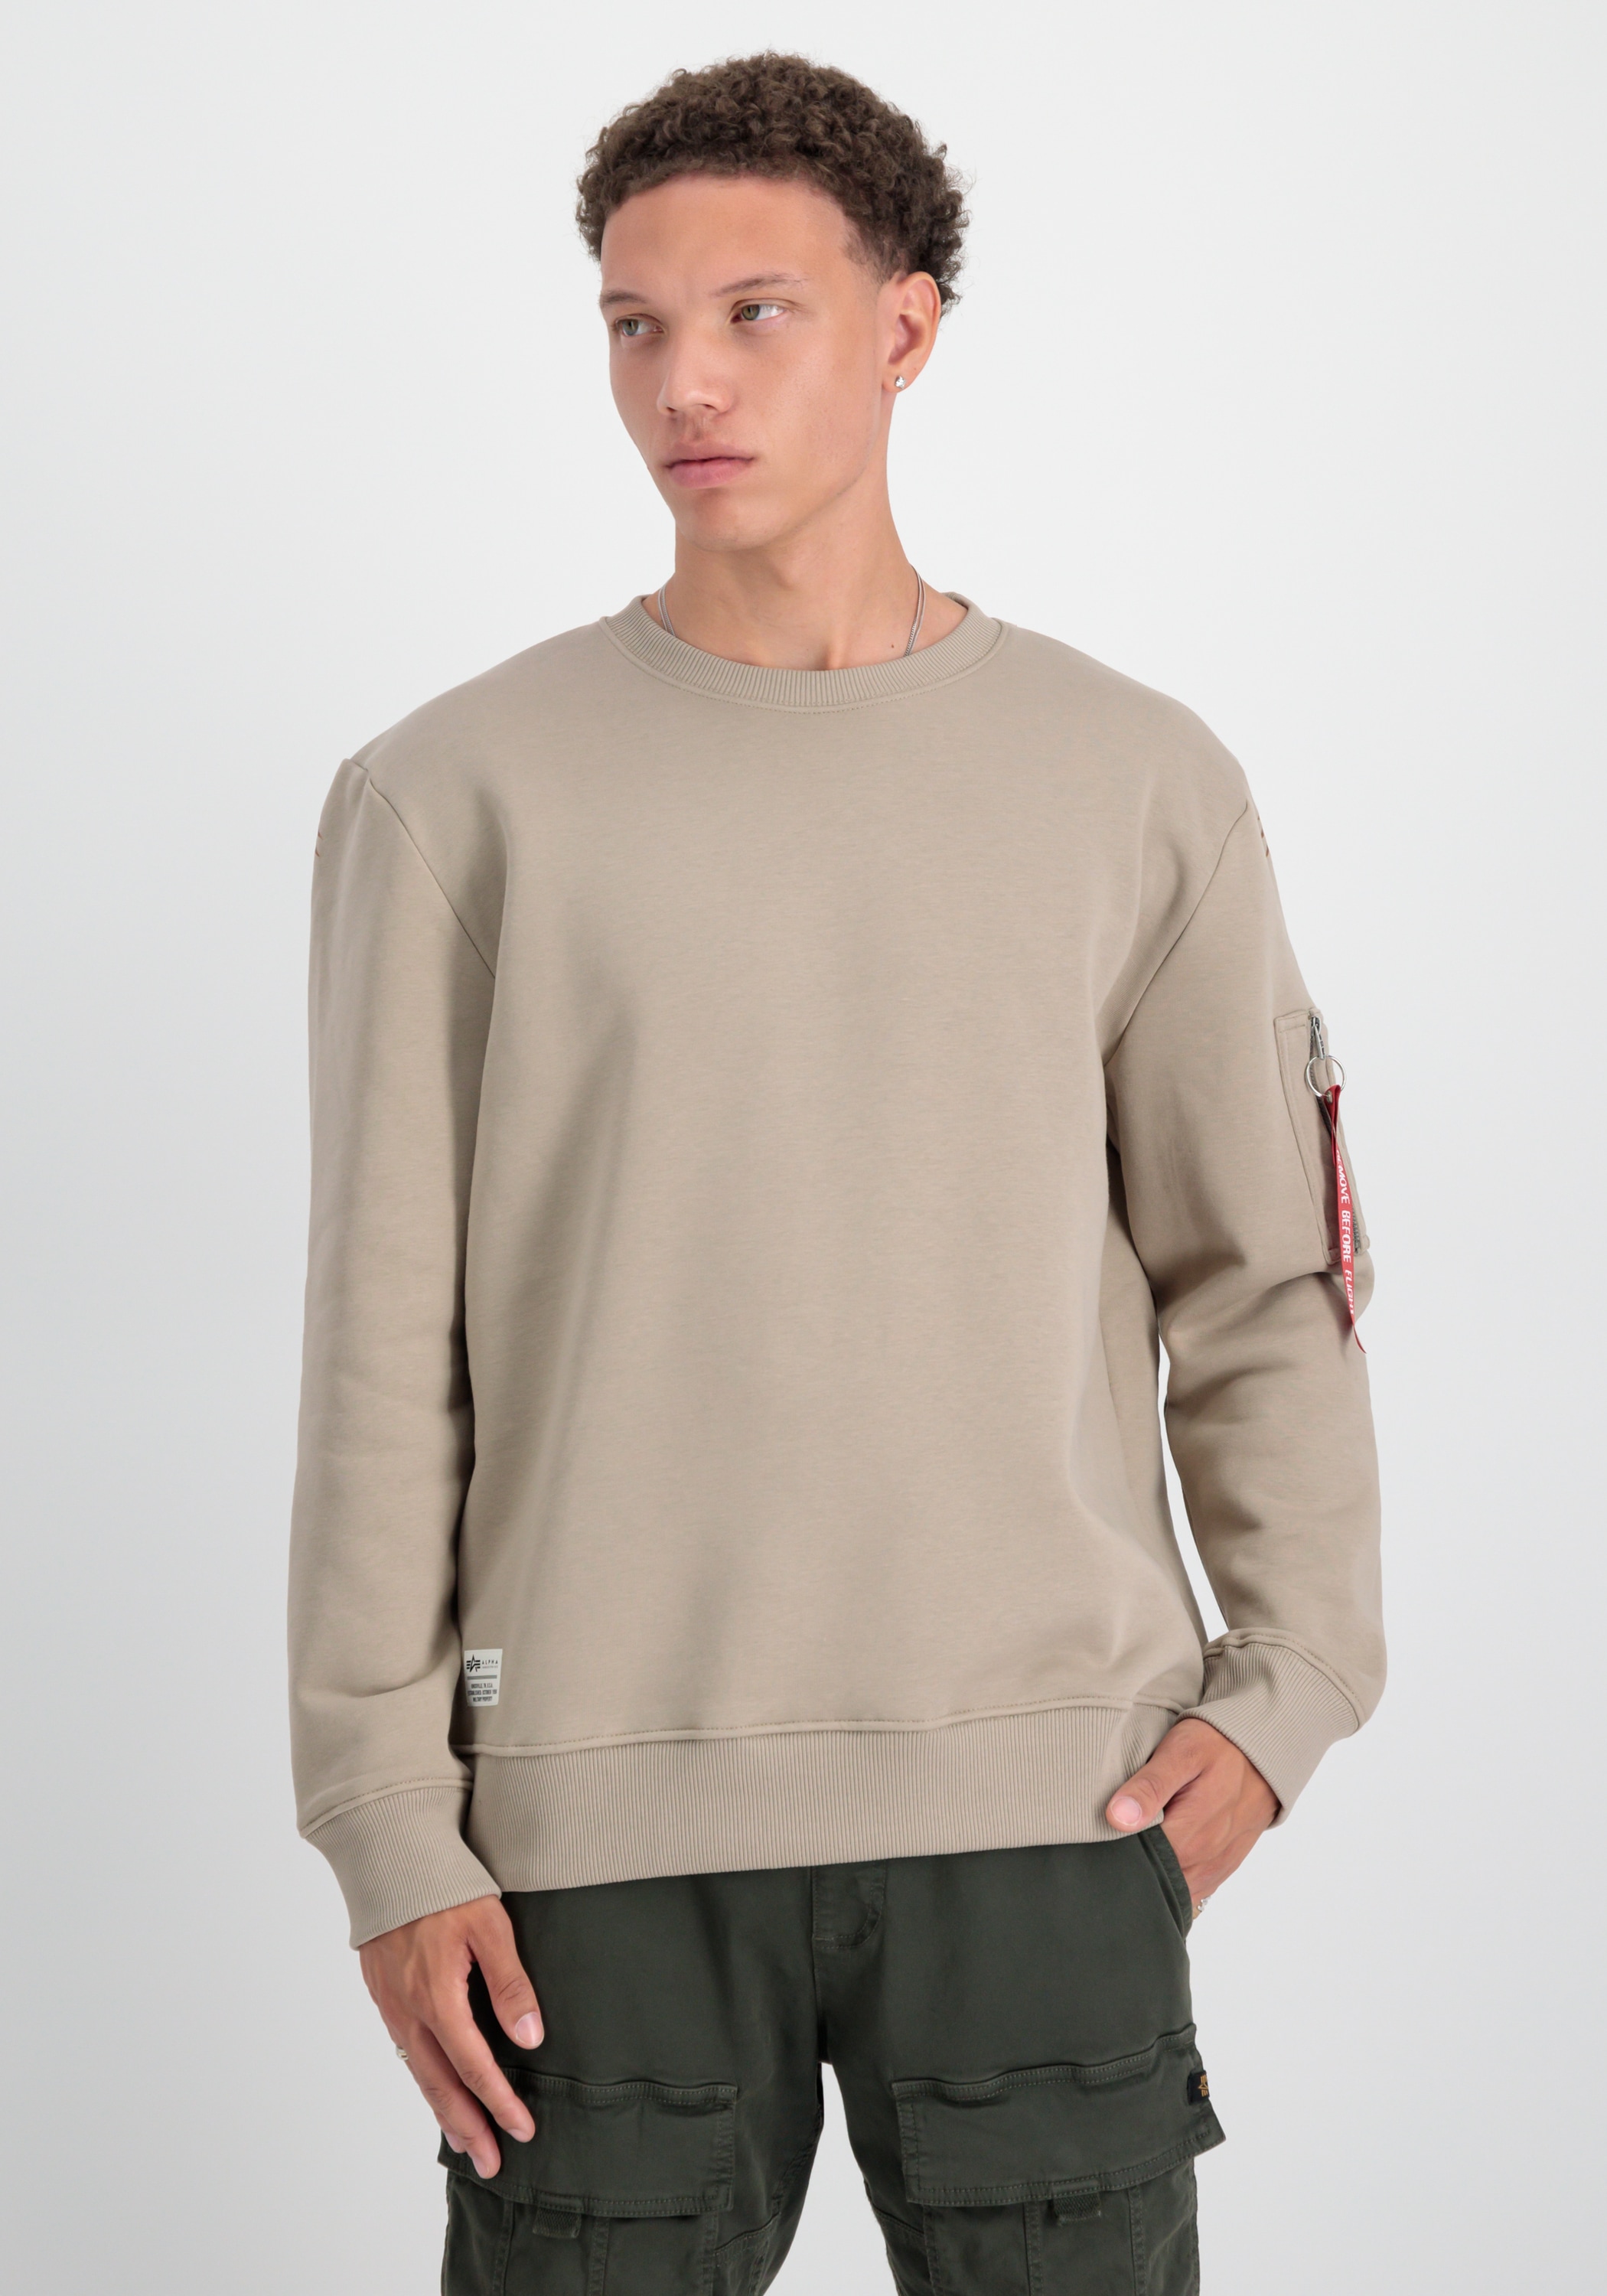 - »Alpha kaufen Sweater« Industries Sweatshirts Dragon EMB Men Industries Sweater Alpha